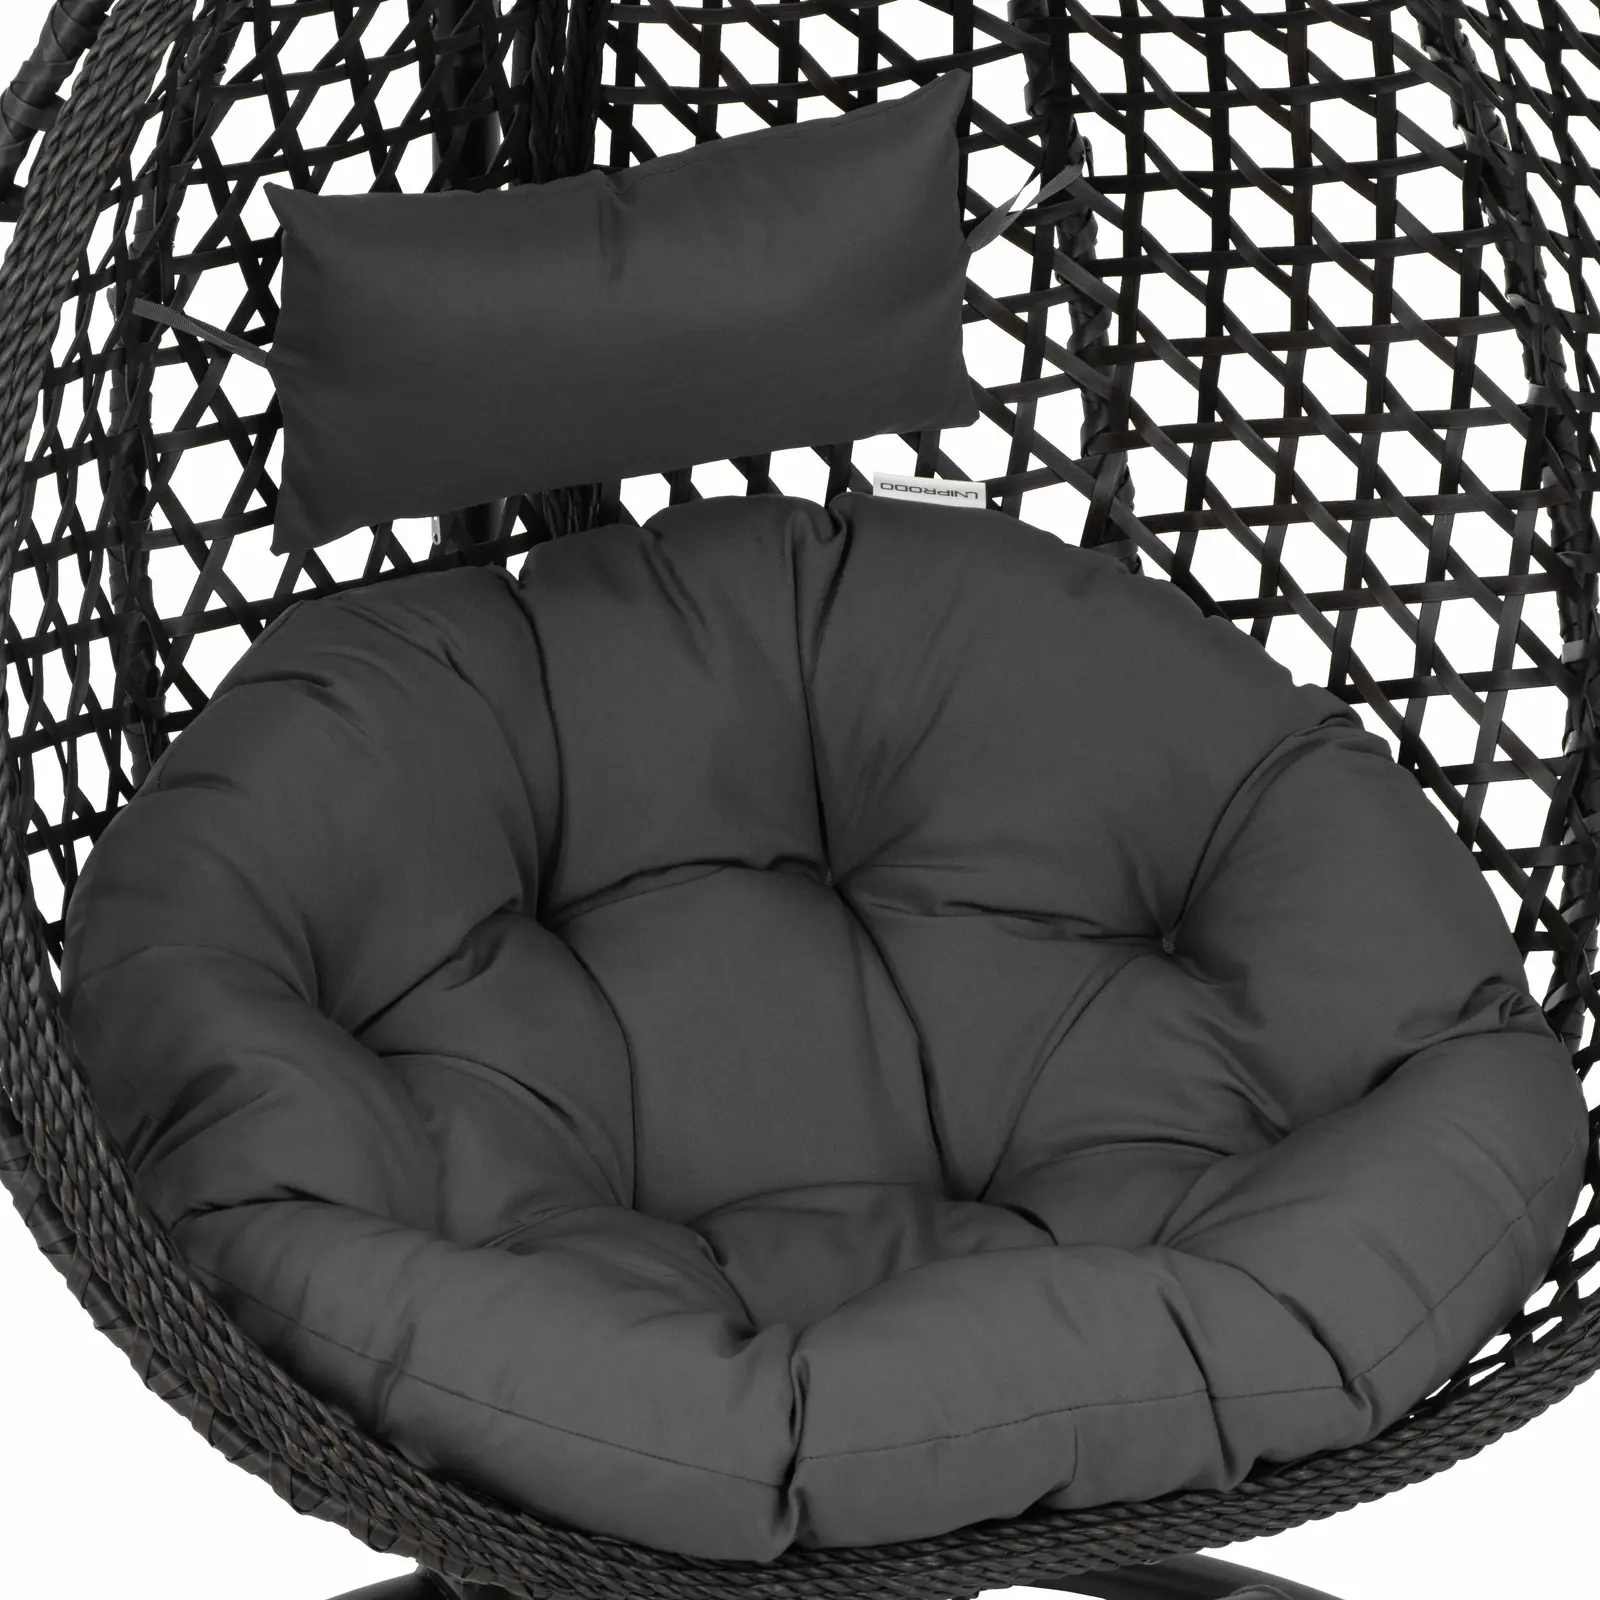 Κρεμαστή καρέκλα εξωτερικού χώρου με βάση - πτυσσόμενο κάθισμα - μαύρο/γκρι - σχήμα σταγόνας